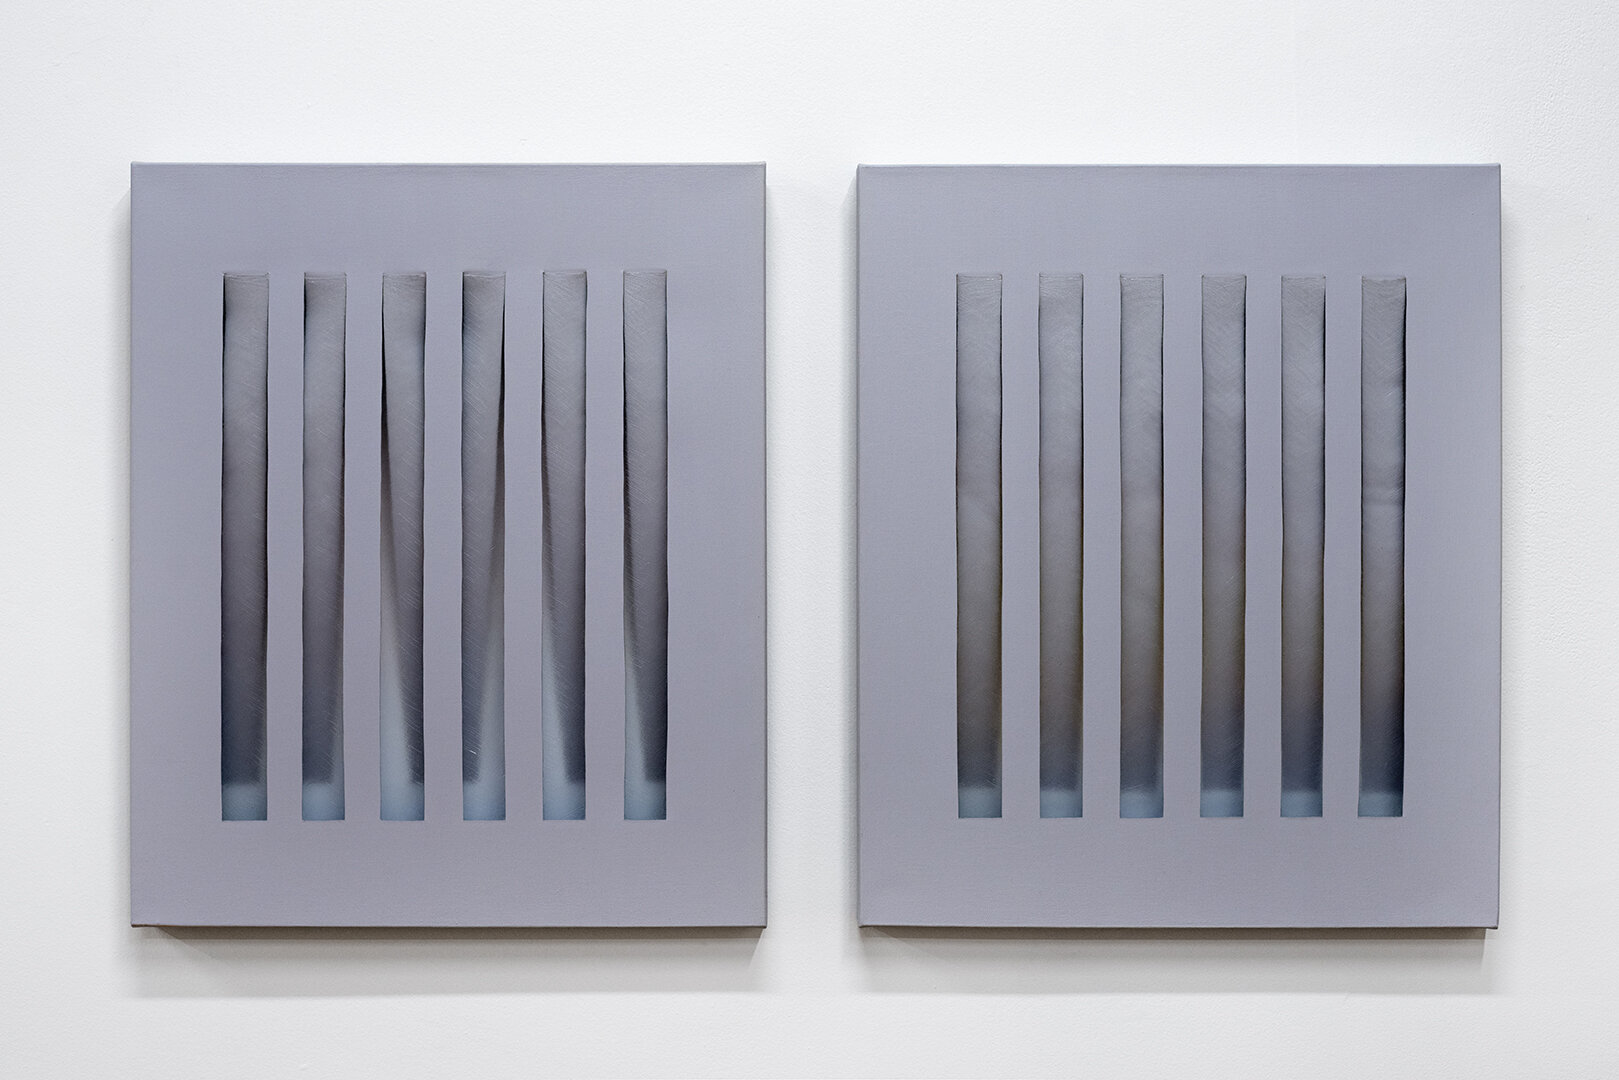   Haze  Acrylic and gel medium on canvas  26” x 24” each  2019 